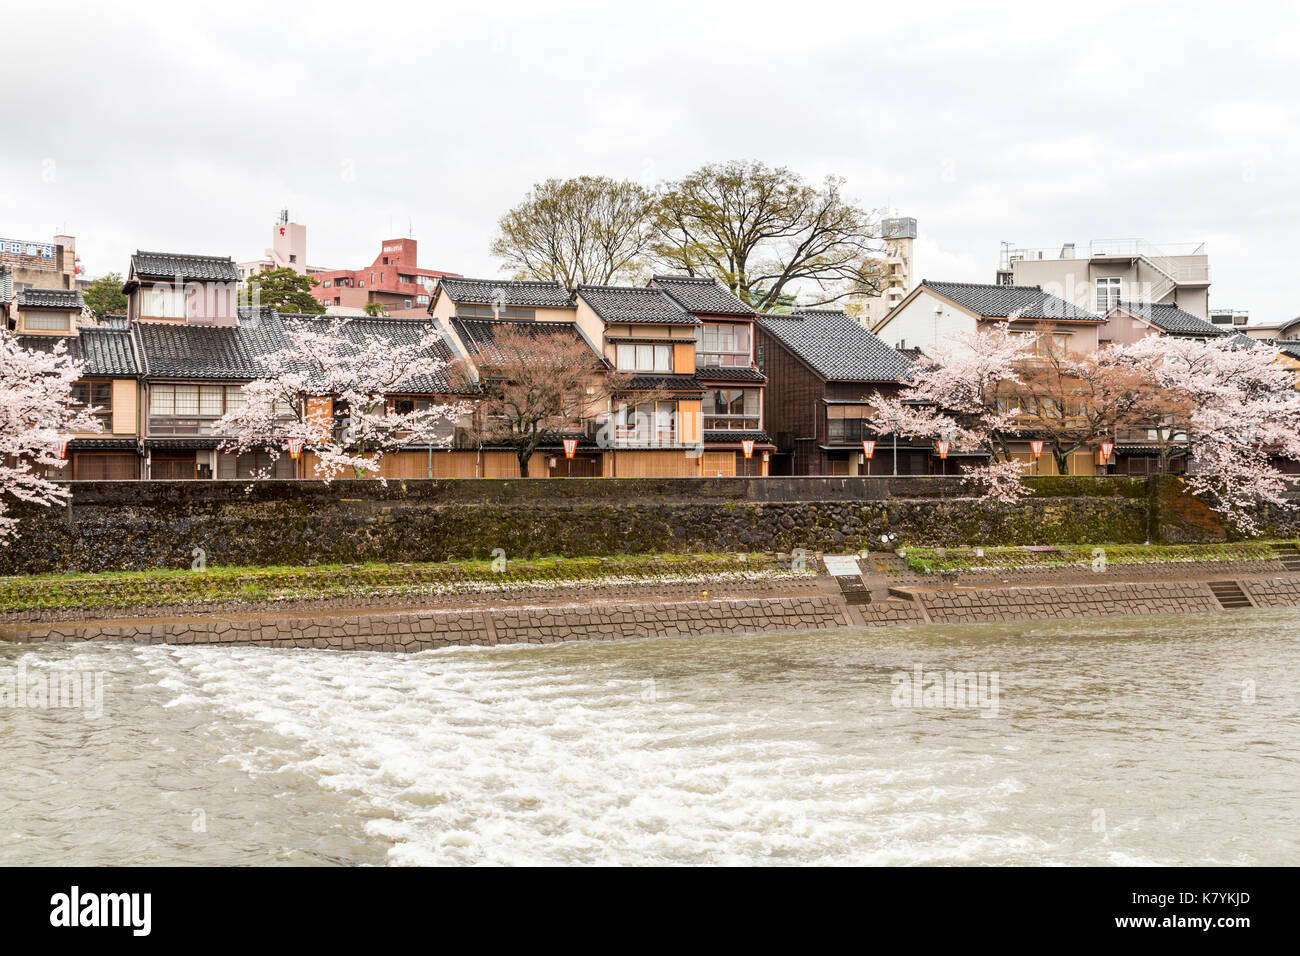 Le Japon, Kanazawa, quartier Higashi Chaya. Avec la rivière Asanogawa traditionnel en bois de style Edo au bord de l'immobilier et de cerisiers. Un soleil brillant. Banque D'Images